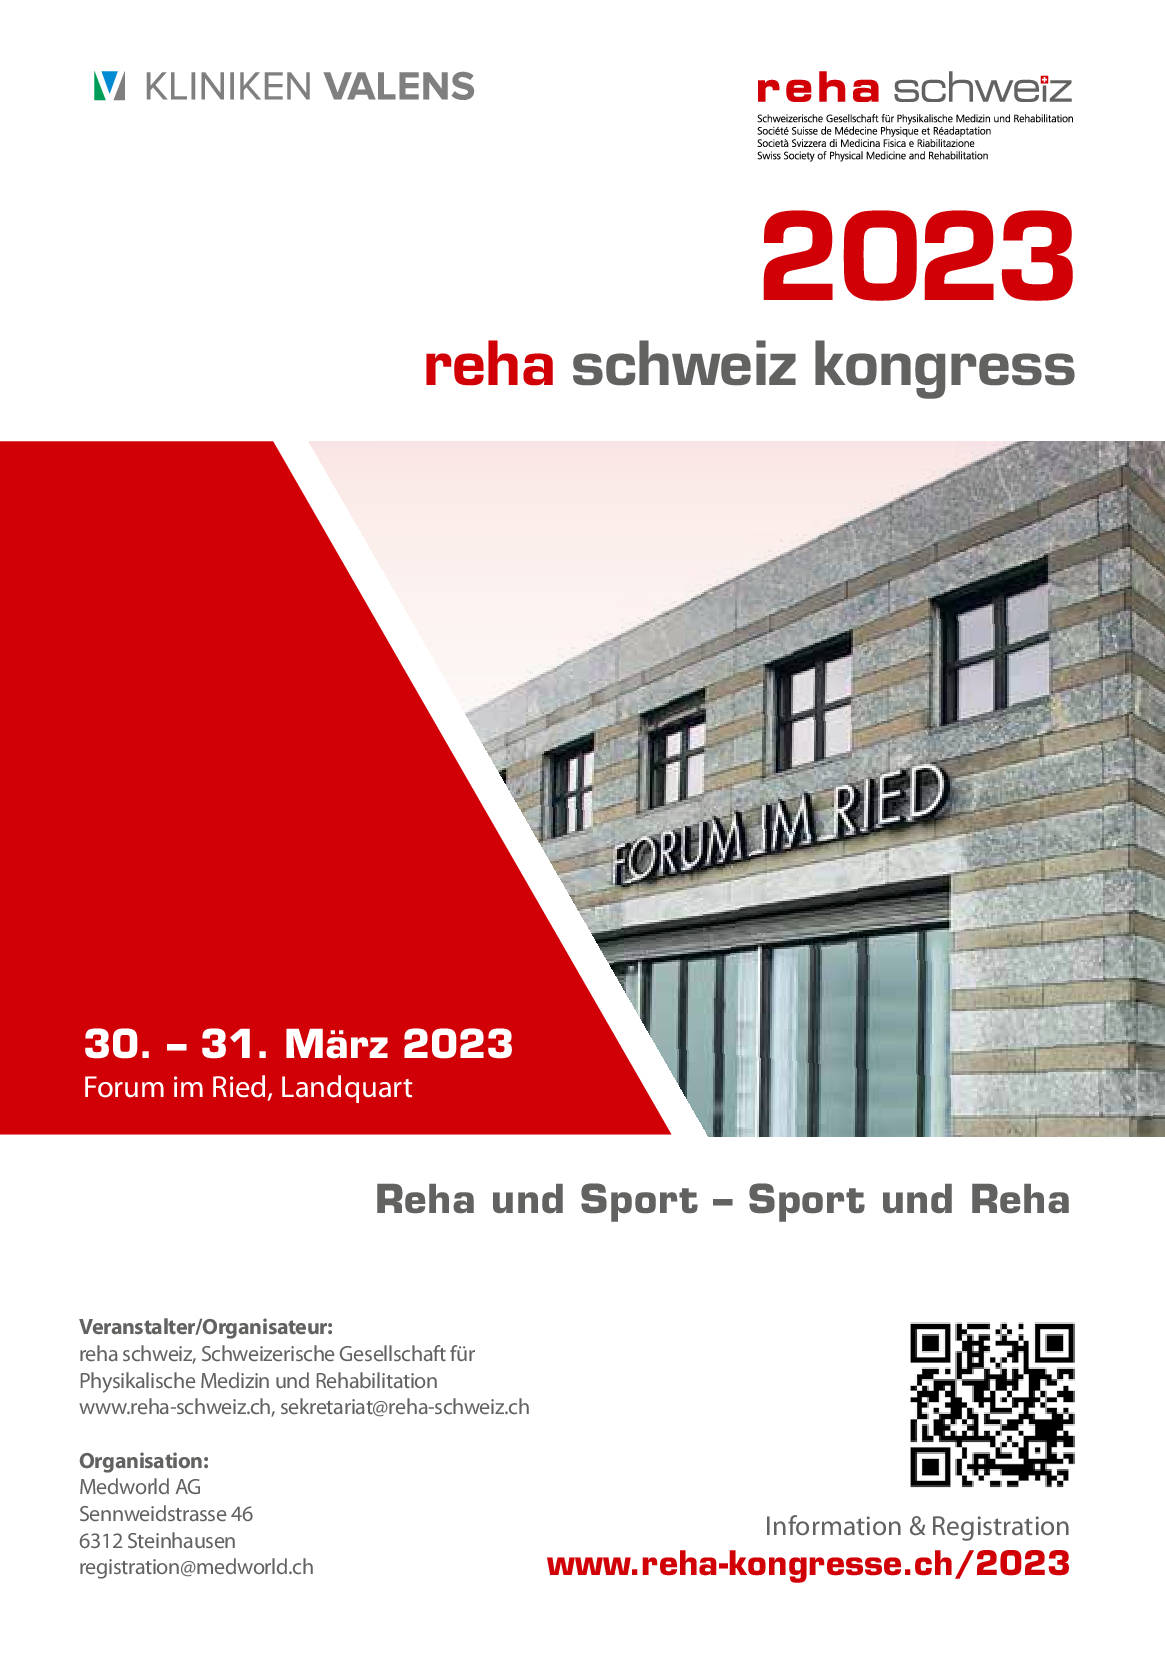 reha schweiz kongress 2023 - save the date